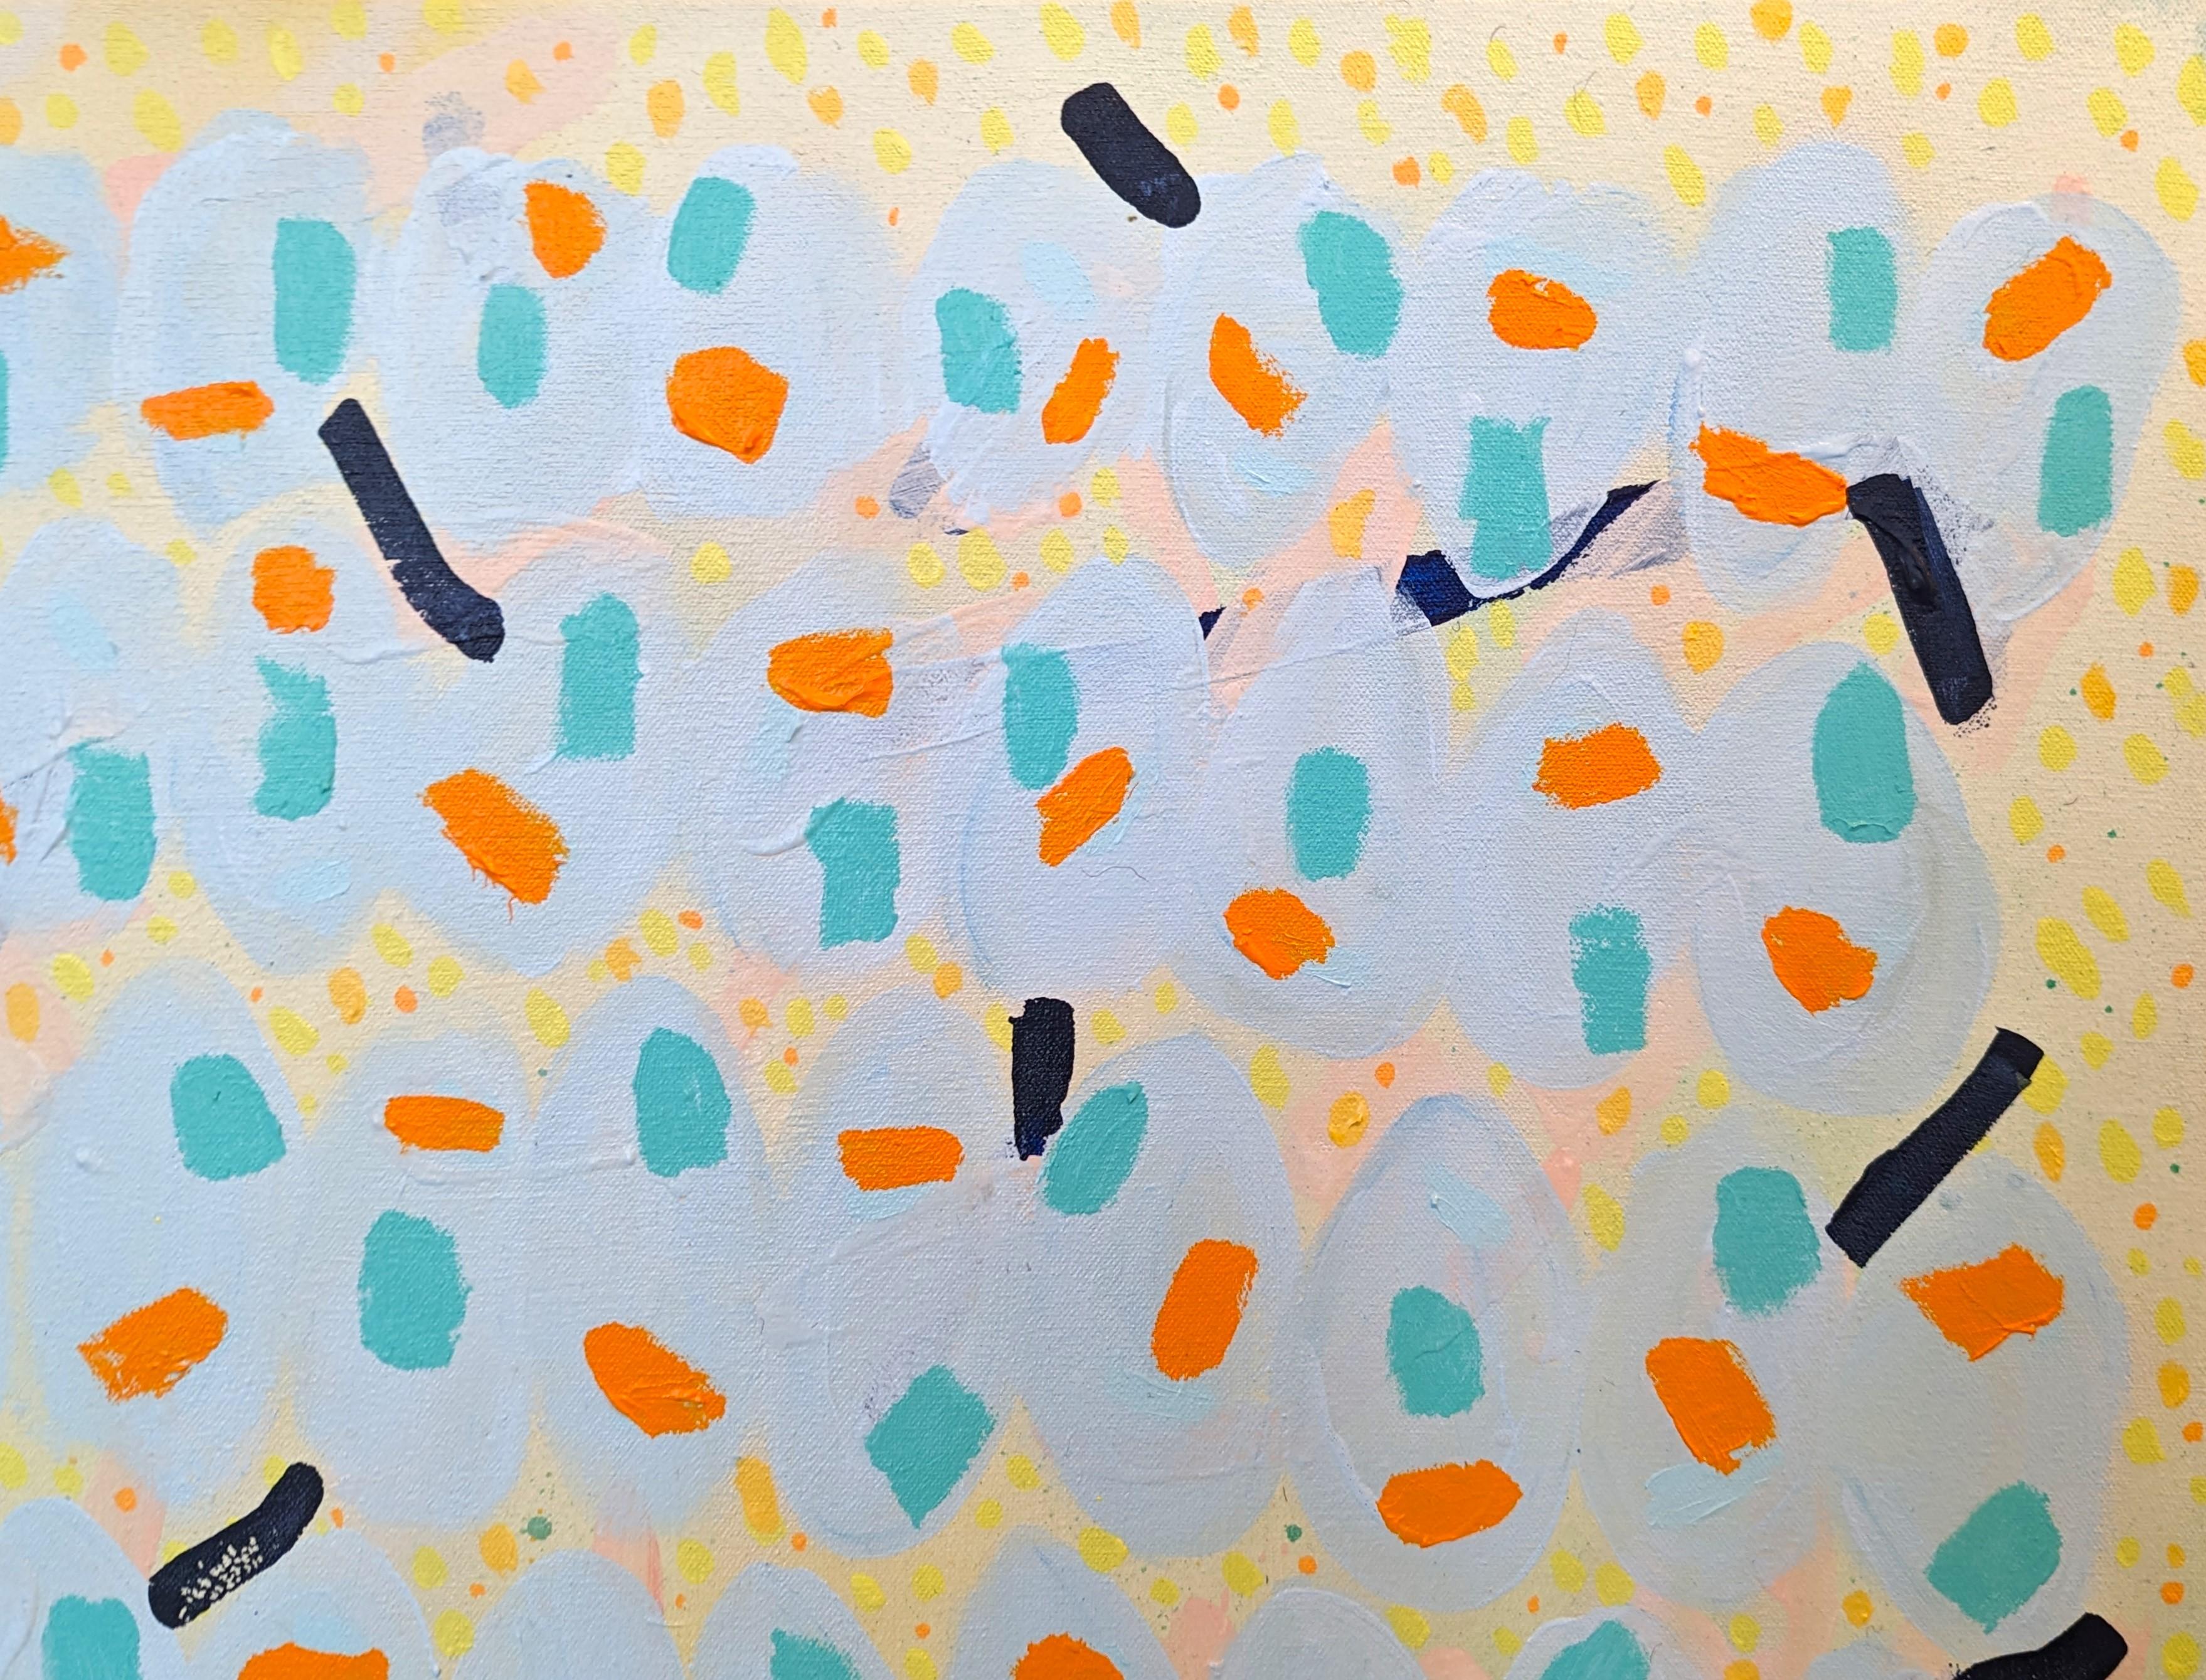 Peinture abstraite colorée de l'artiste contemporain de Houston Peter Healy. L'œuvre présente une variété de formes éparses, vibrantes et aux contours durs. Signé, titré et daté au verso. Actuellement non encadré, mais des options sont